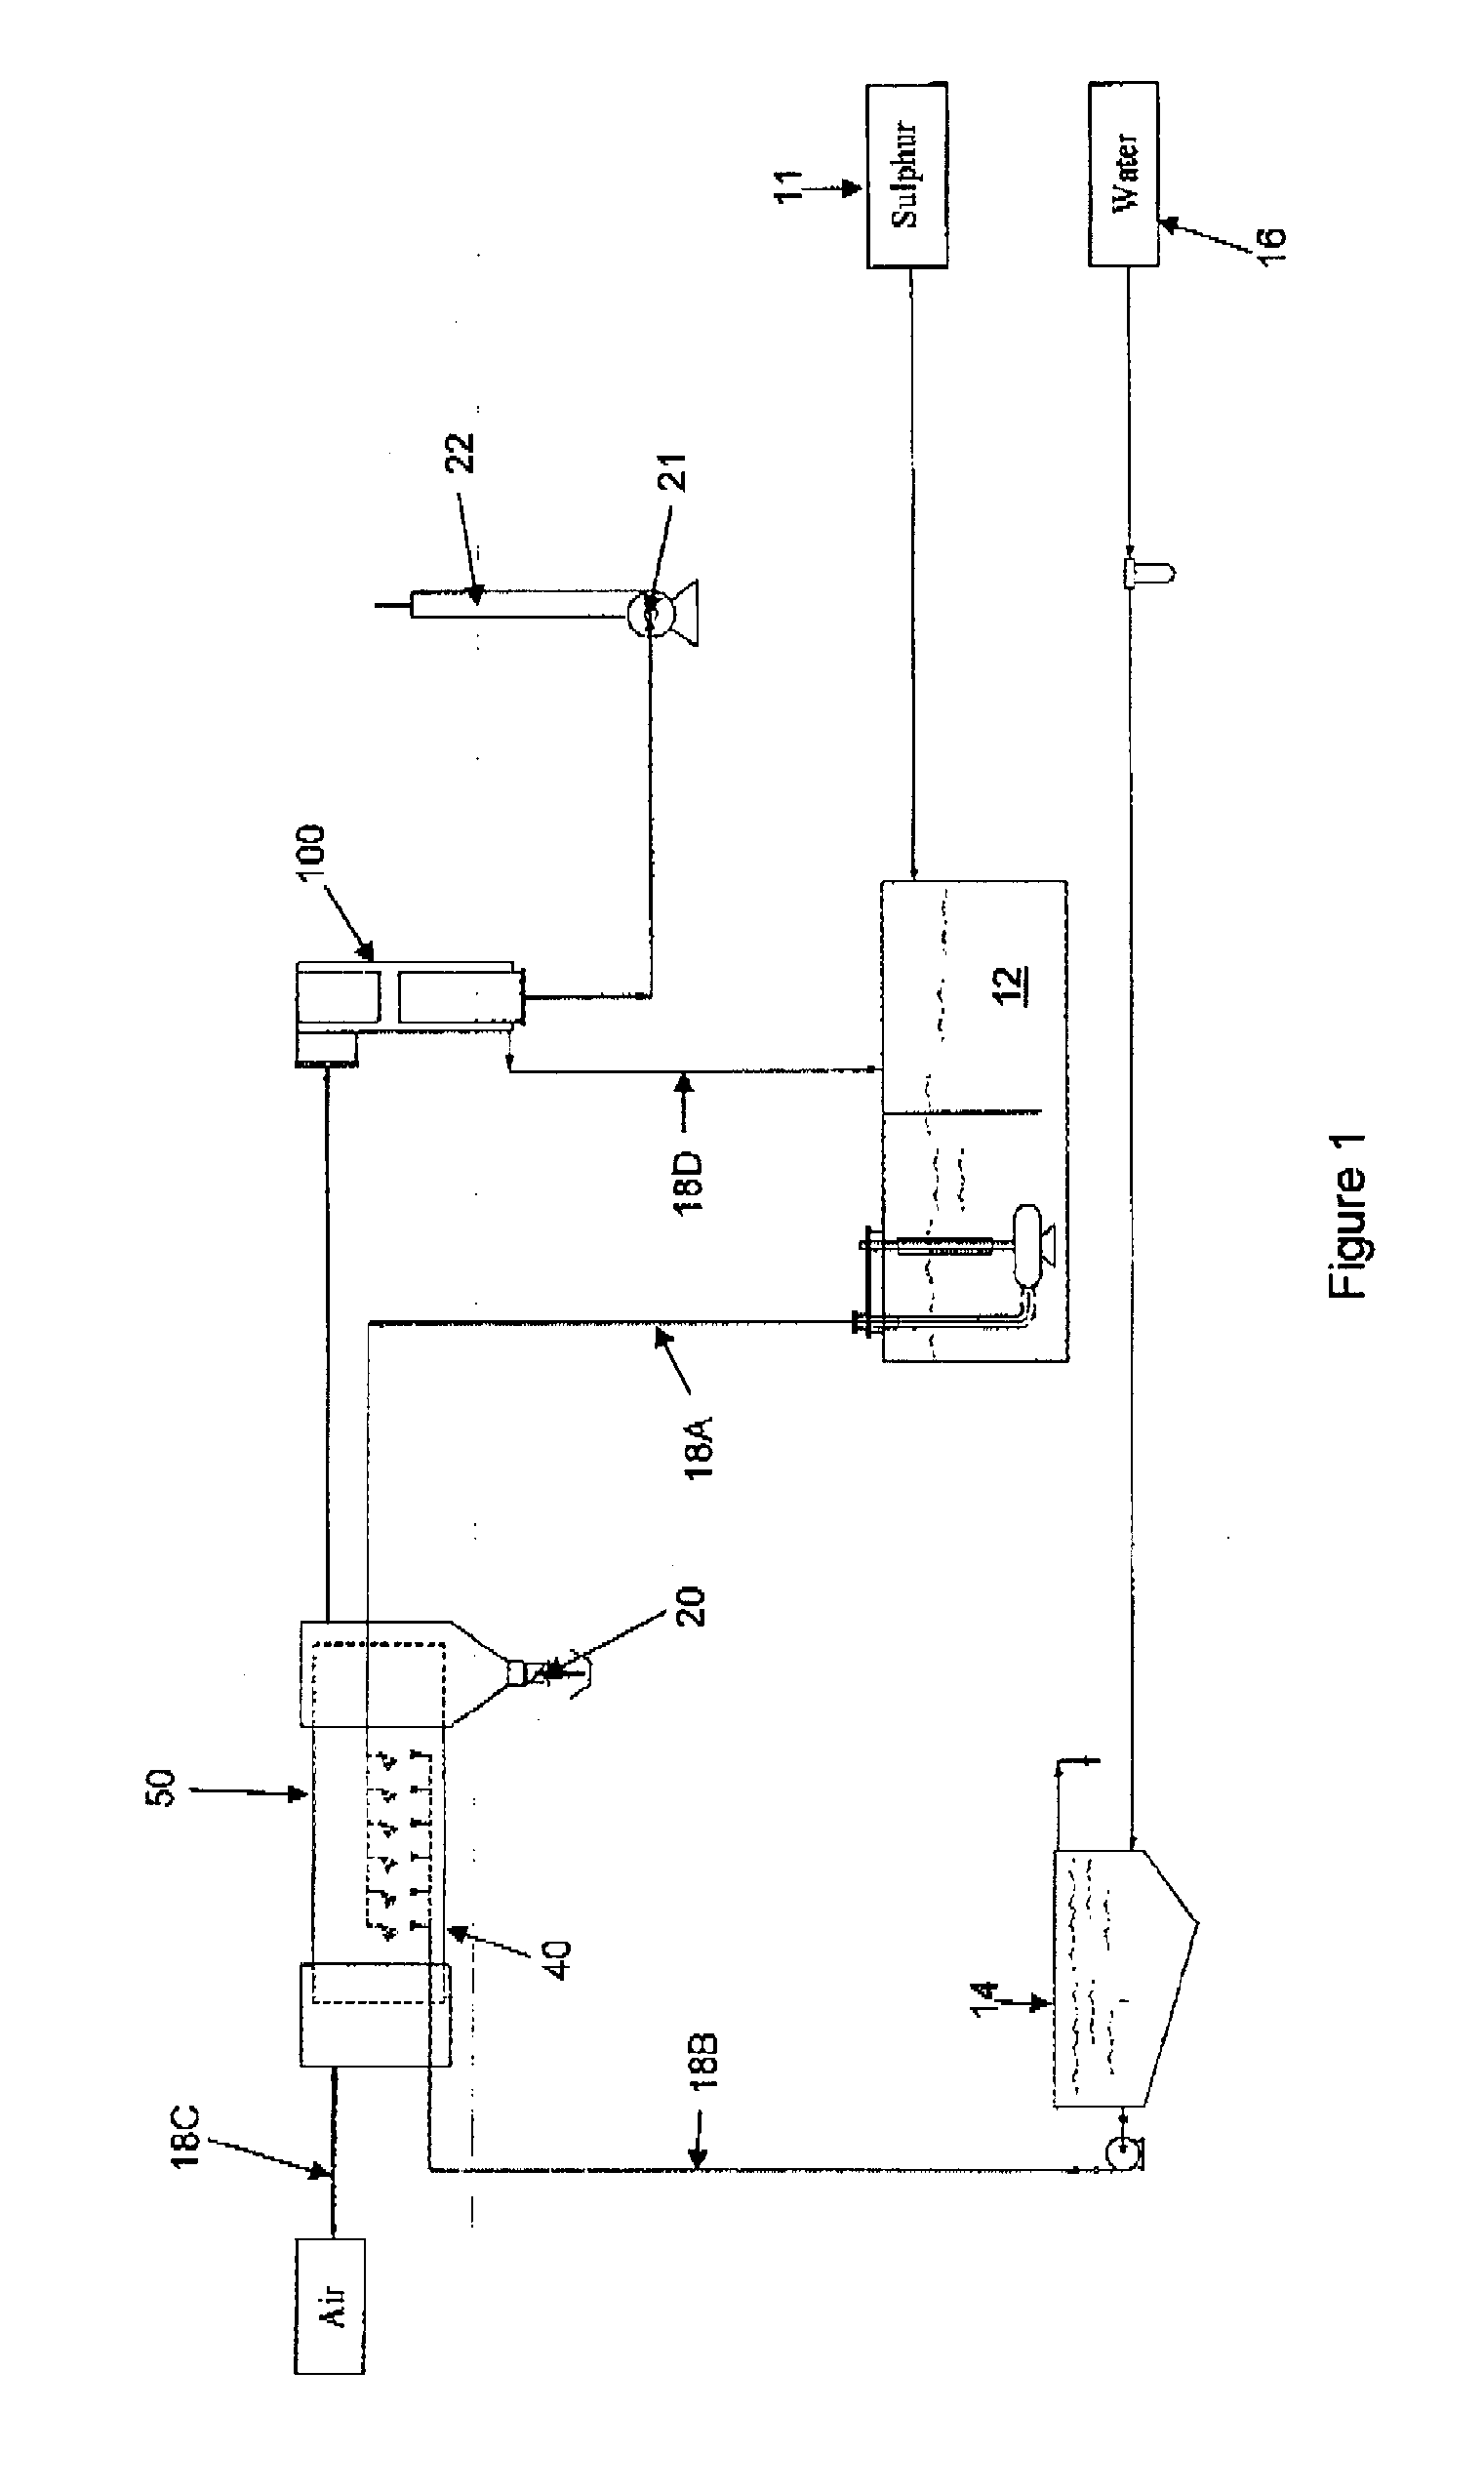 Sulphur Granulation Apparatus and Process